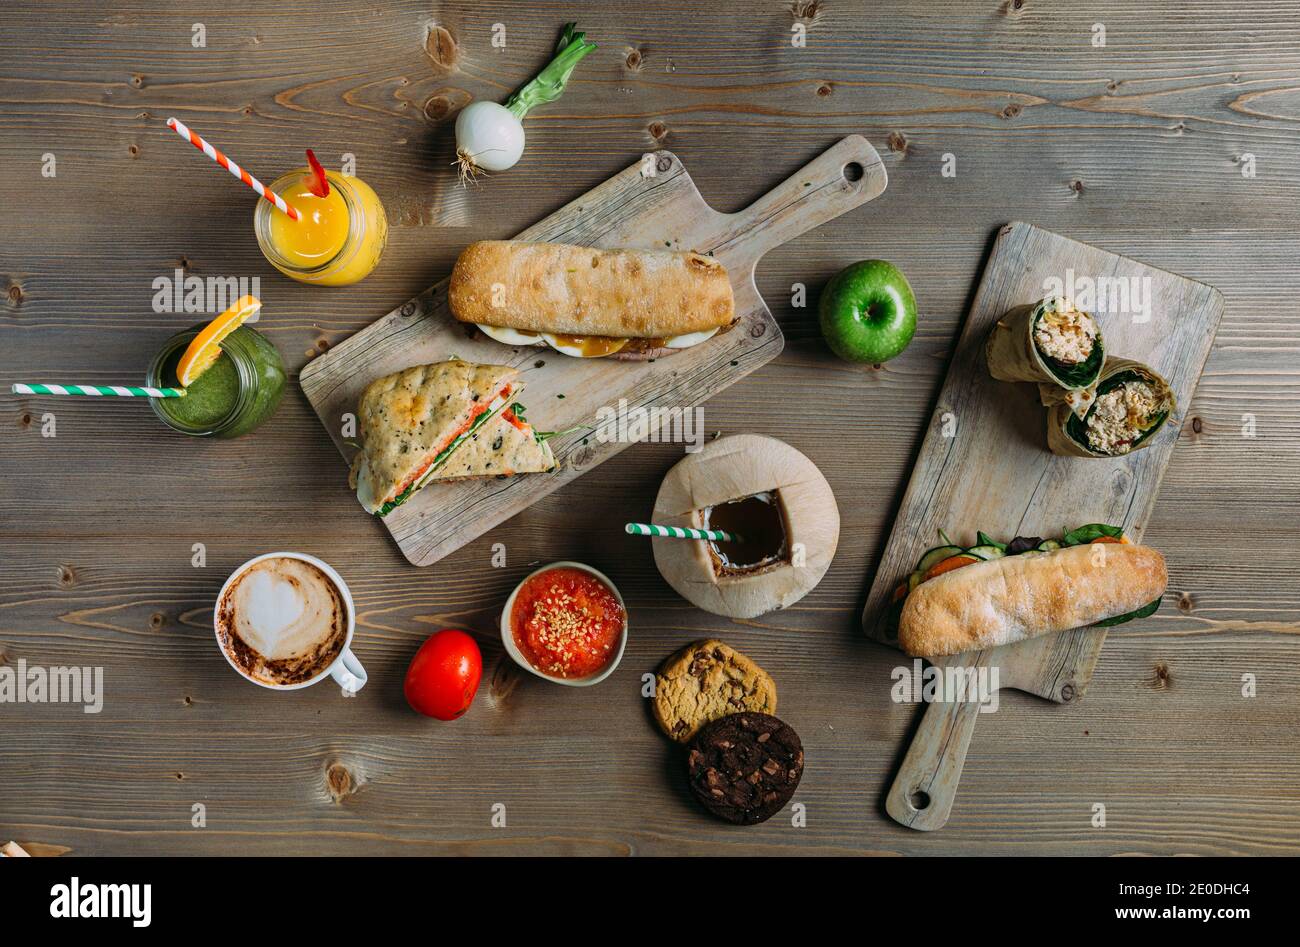 Assortimento di cibi salutari: Panini, panini, biscotti, frutta, caffè e focacce Foto Stock